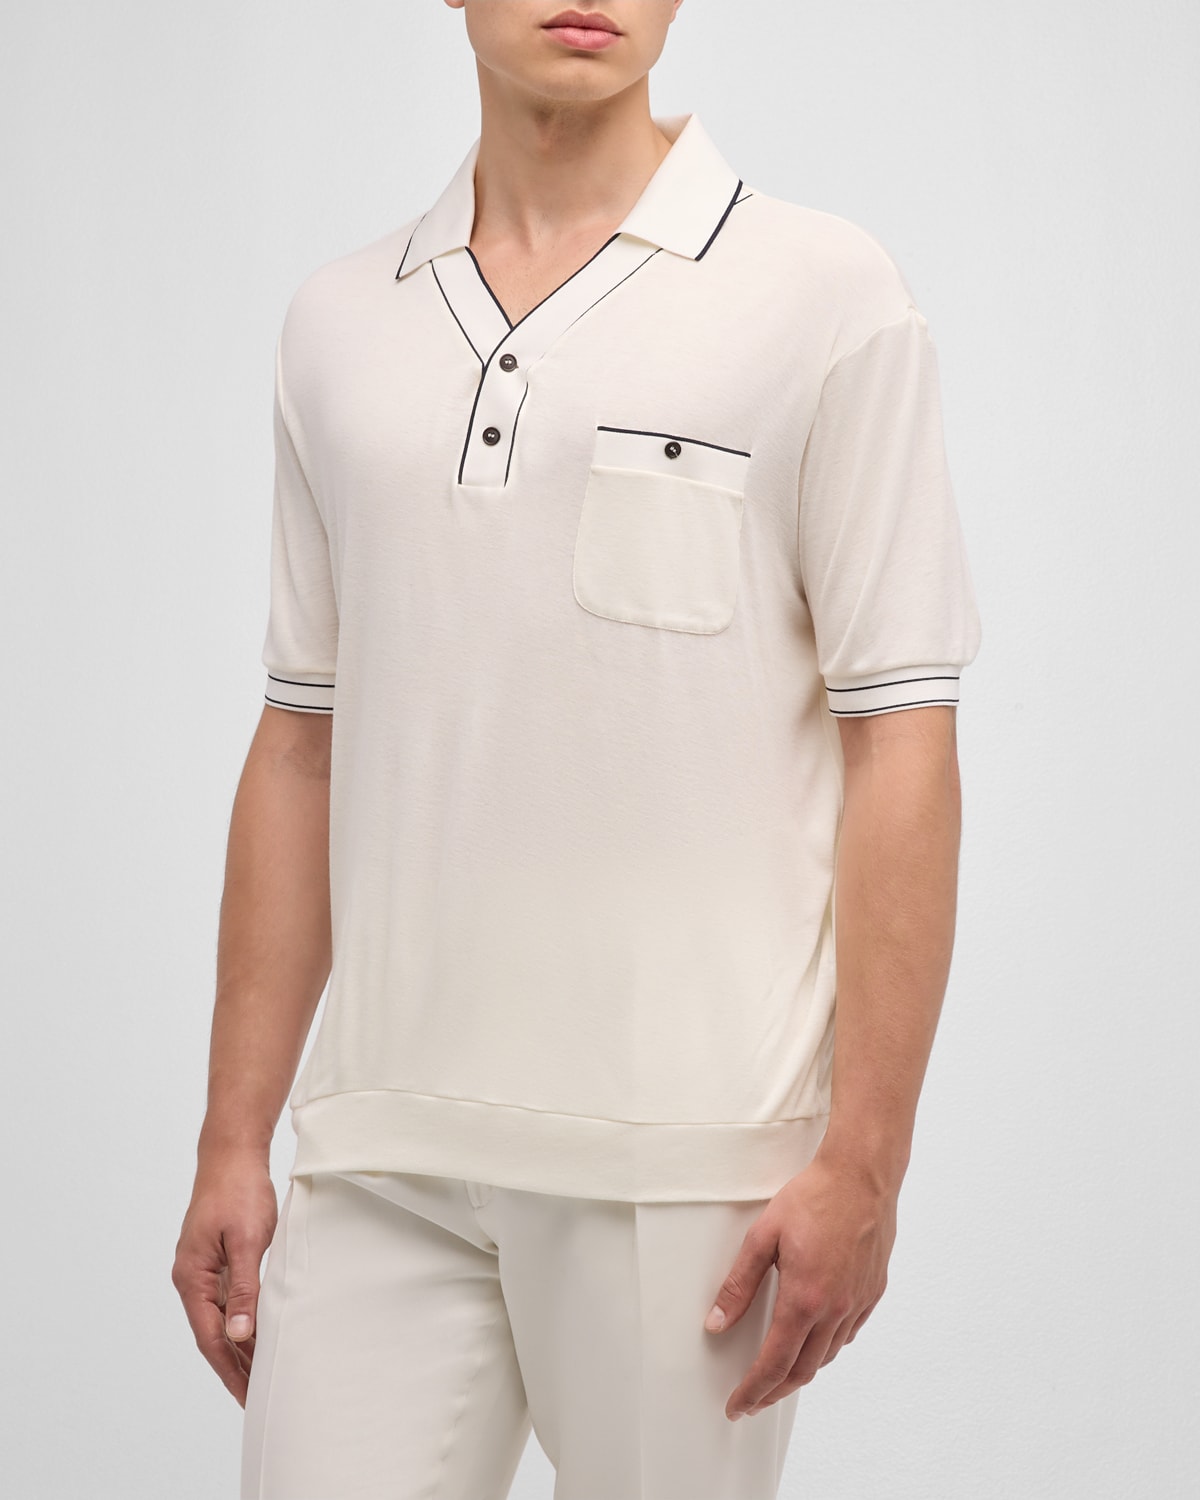 Giorgio Armani Men's Piped Polo Shirt In Multi